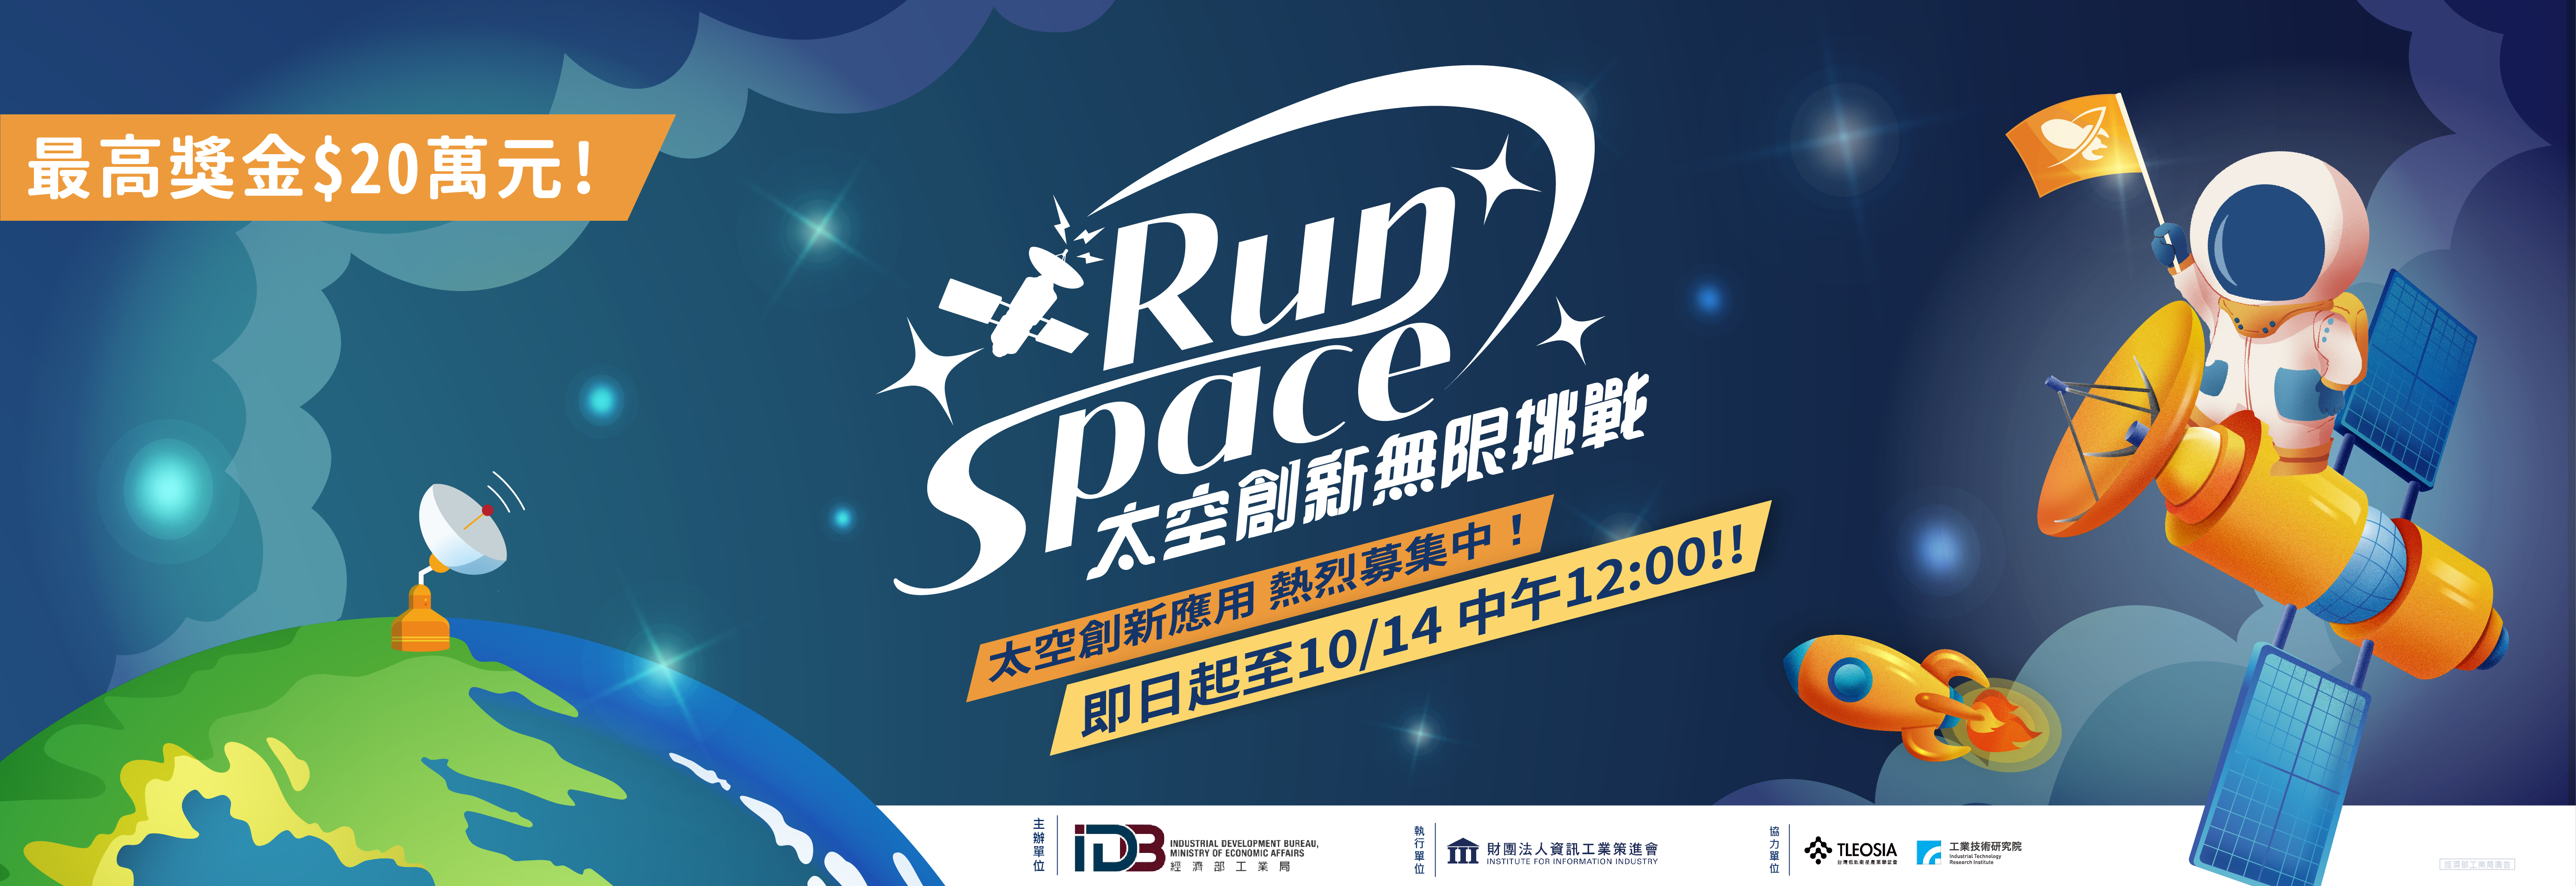 經濟部工業局「RunSpace太空創新無限挑戰」 熱烈徵件中！(活動連結請按此)